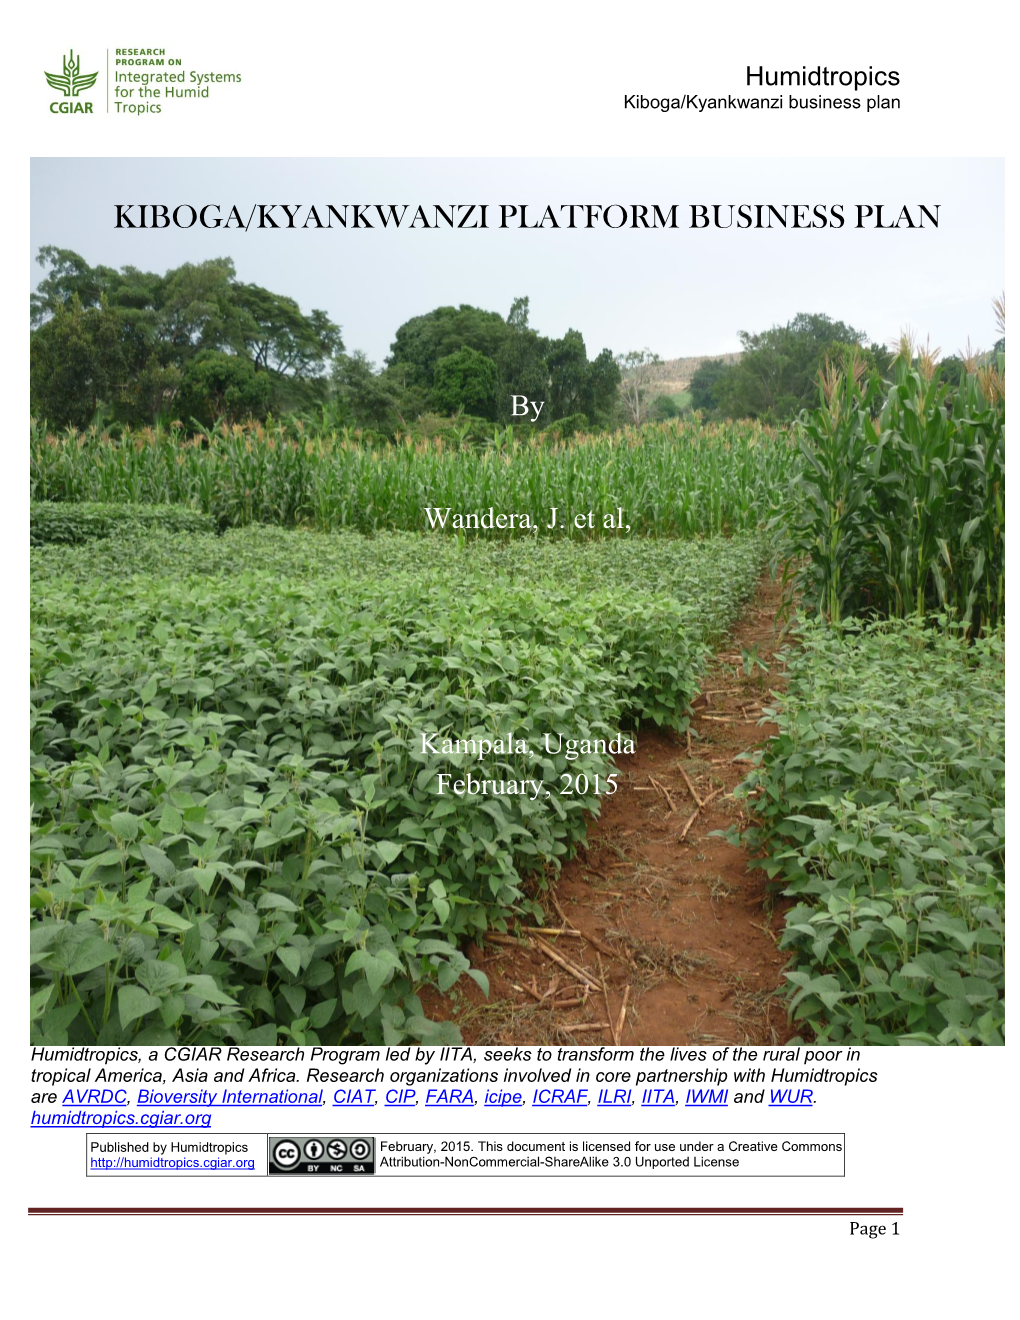 Kiboga/Kyankwanzi Platform Business Plan